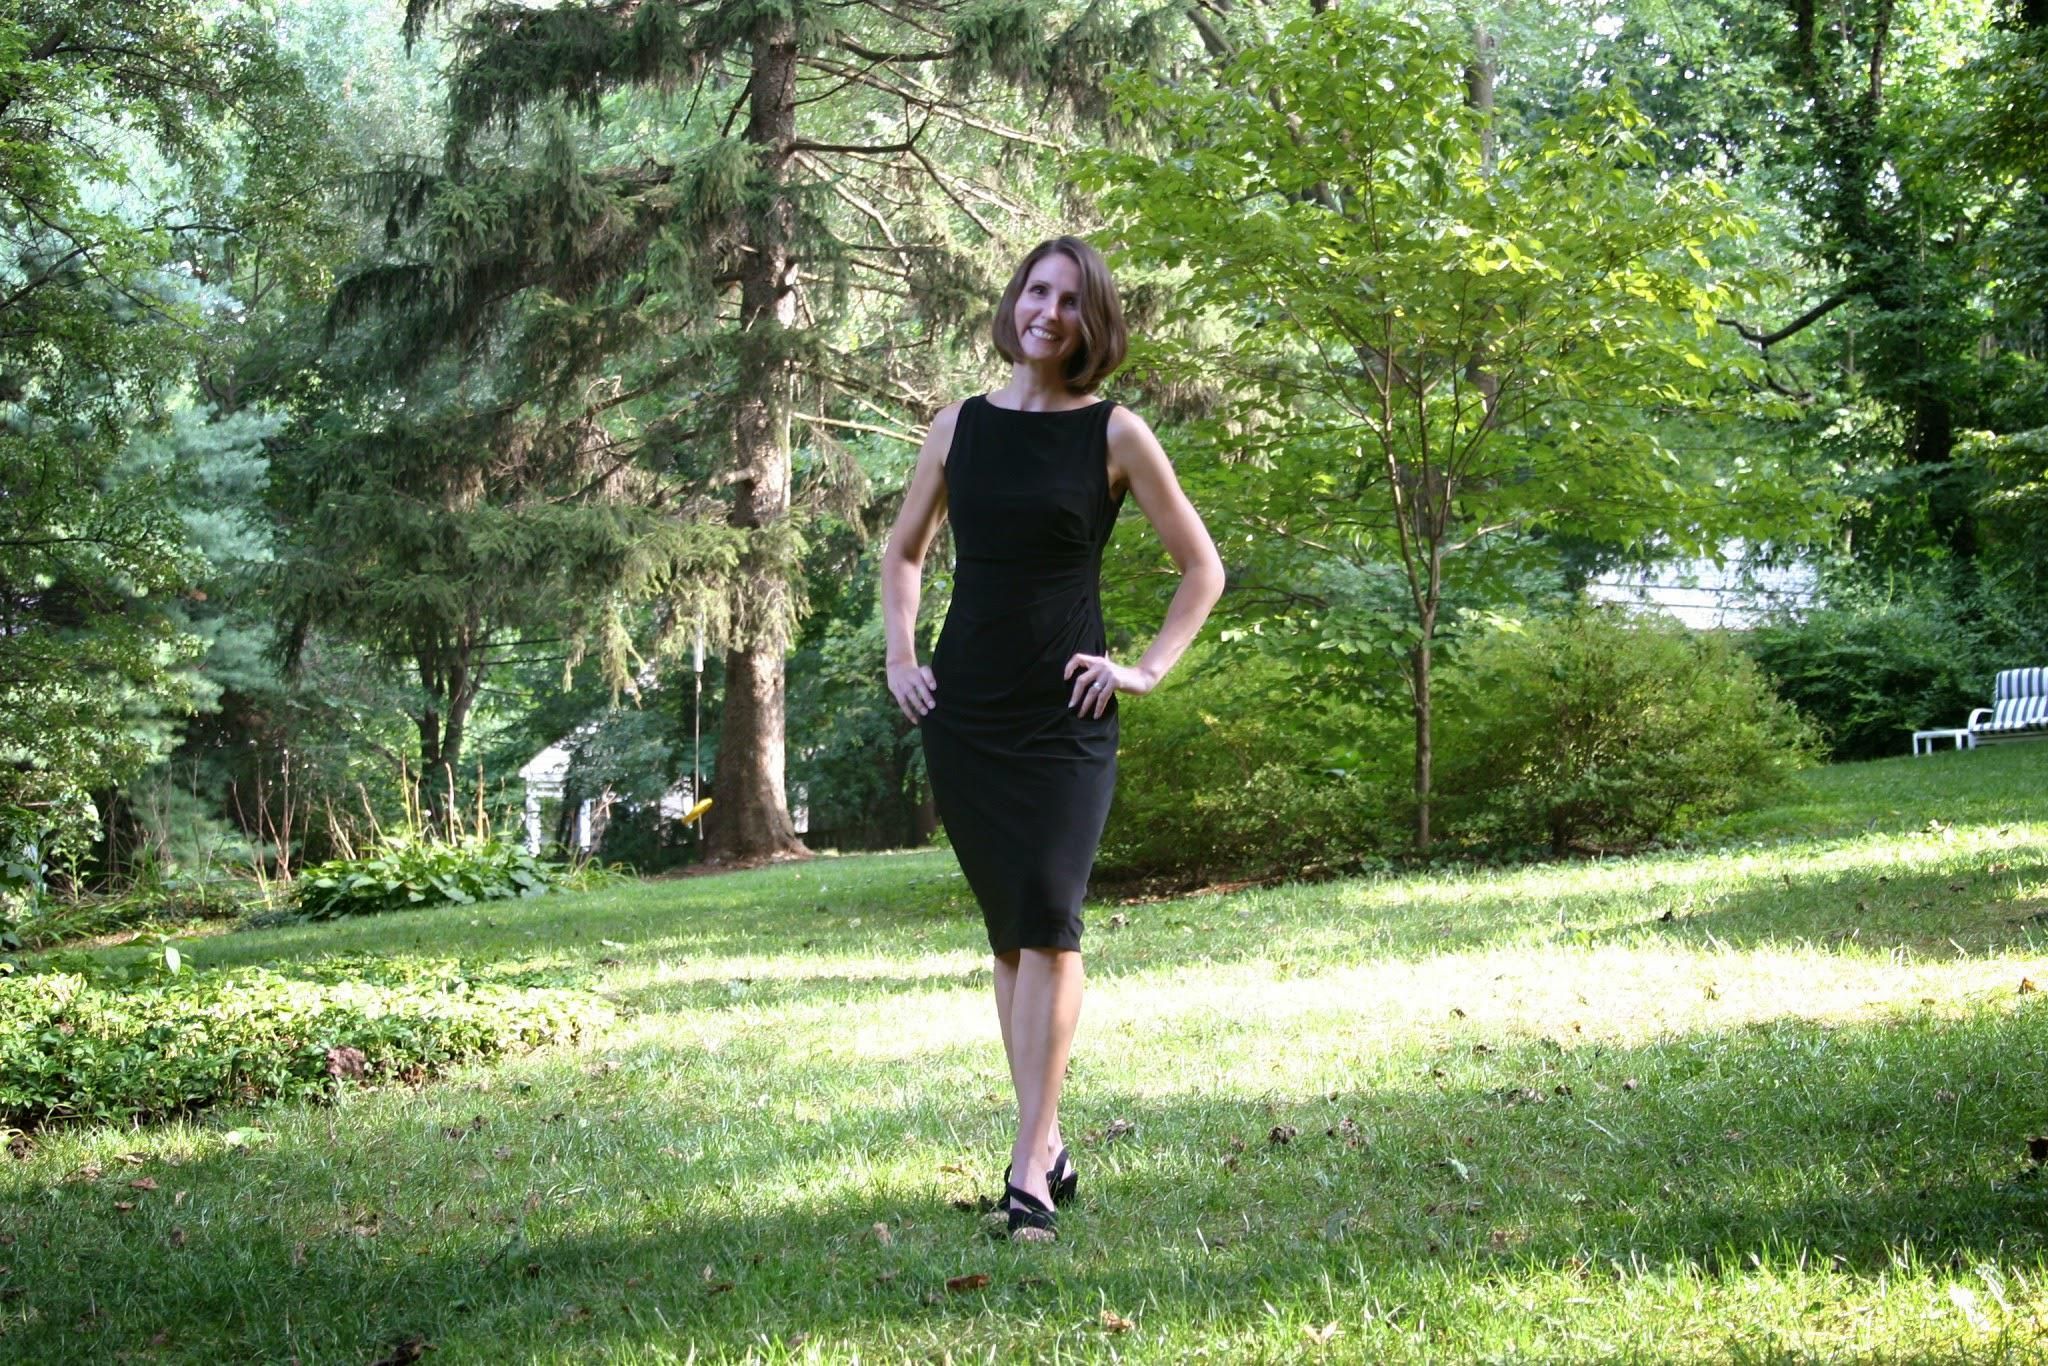 Erica in a black dress